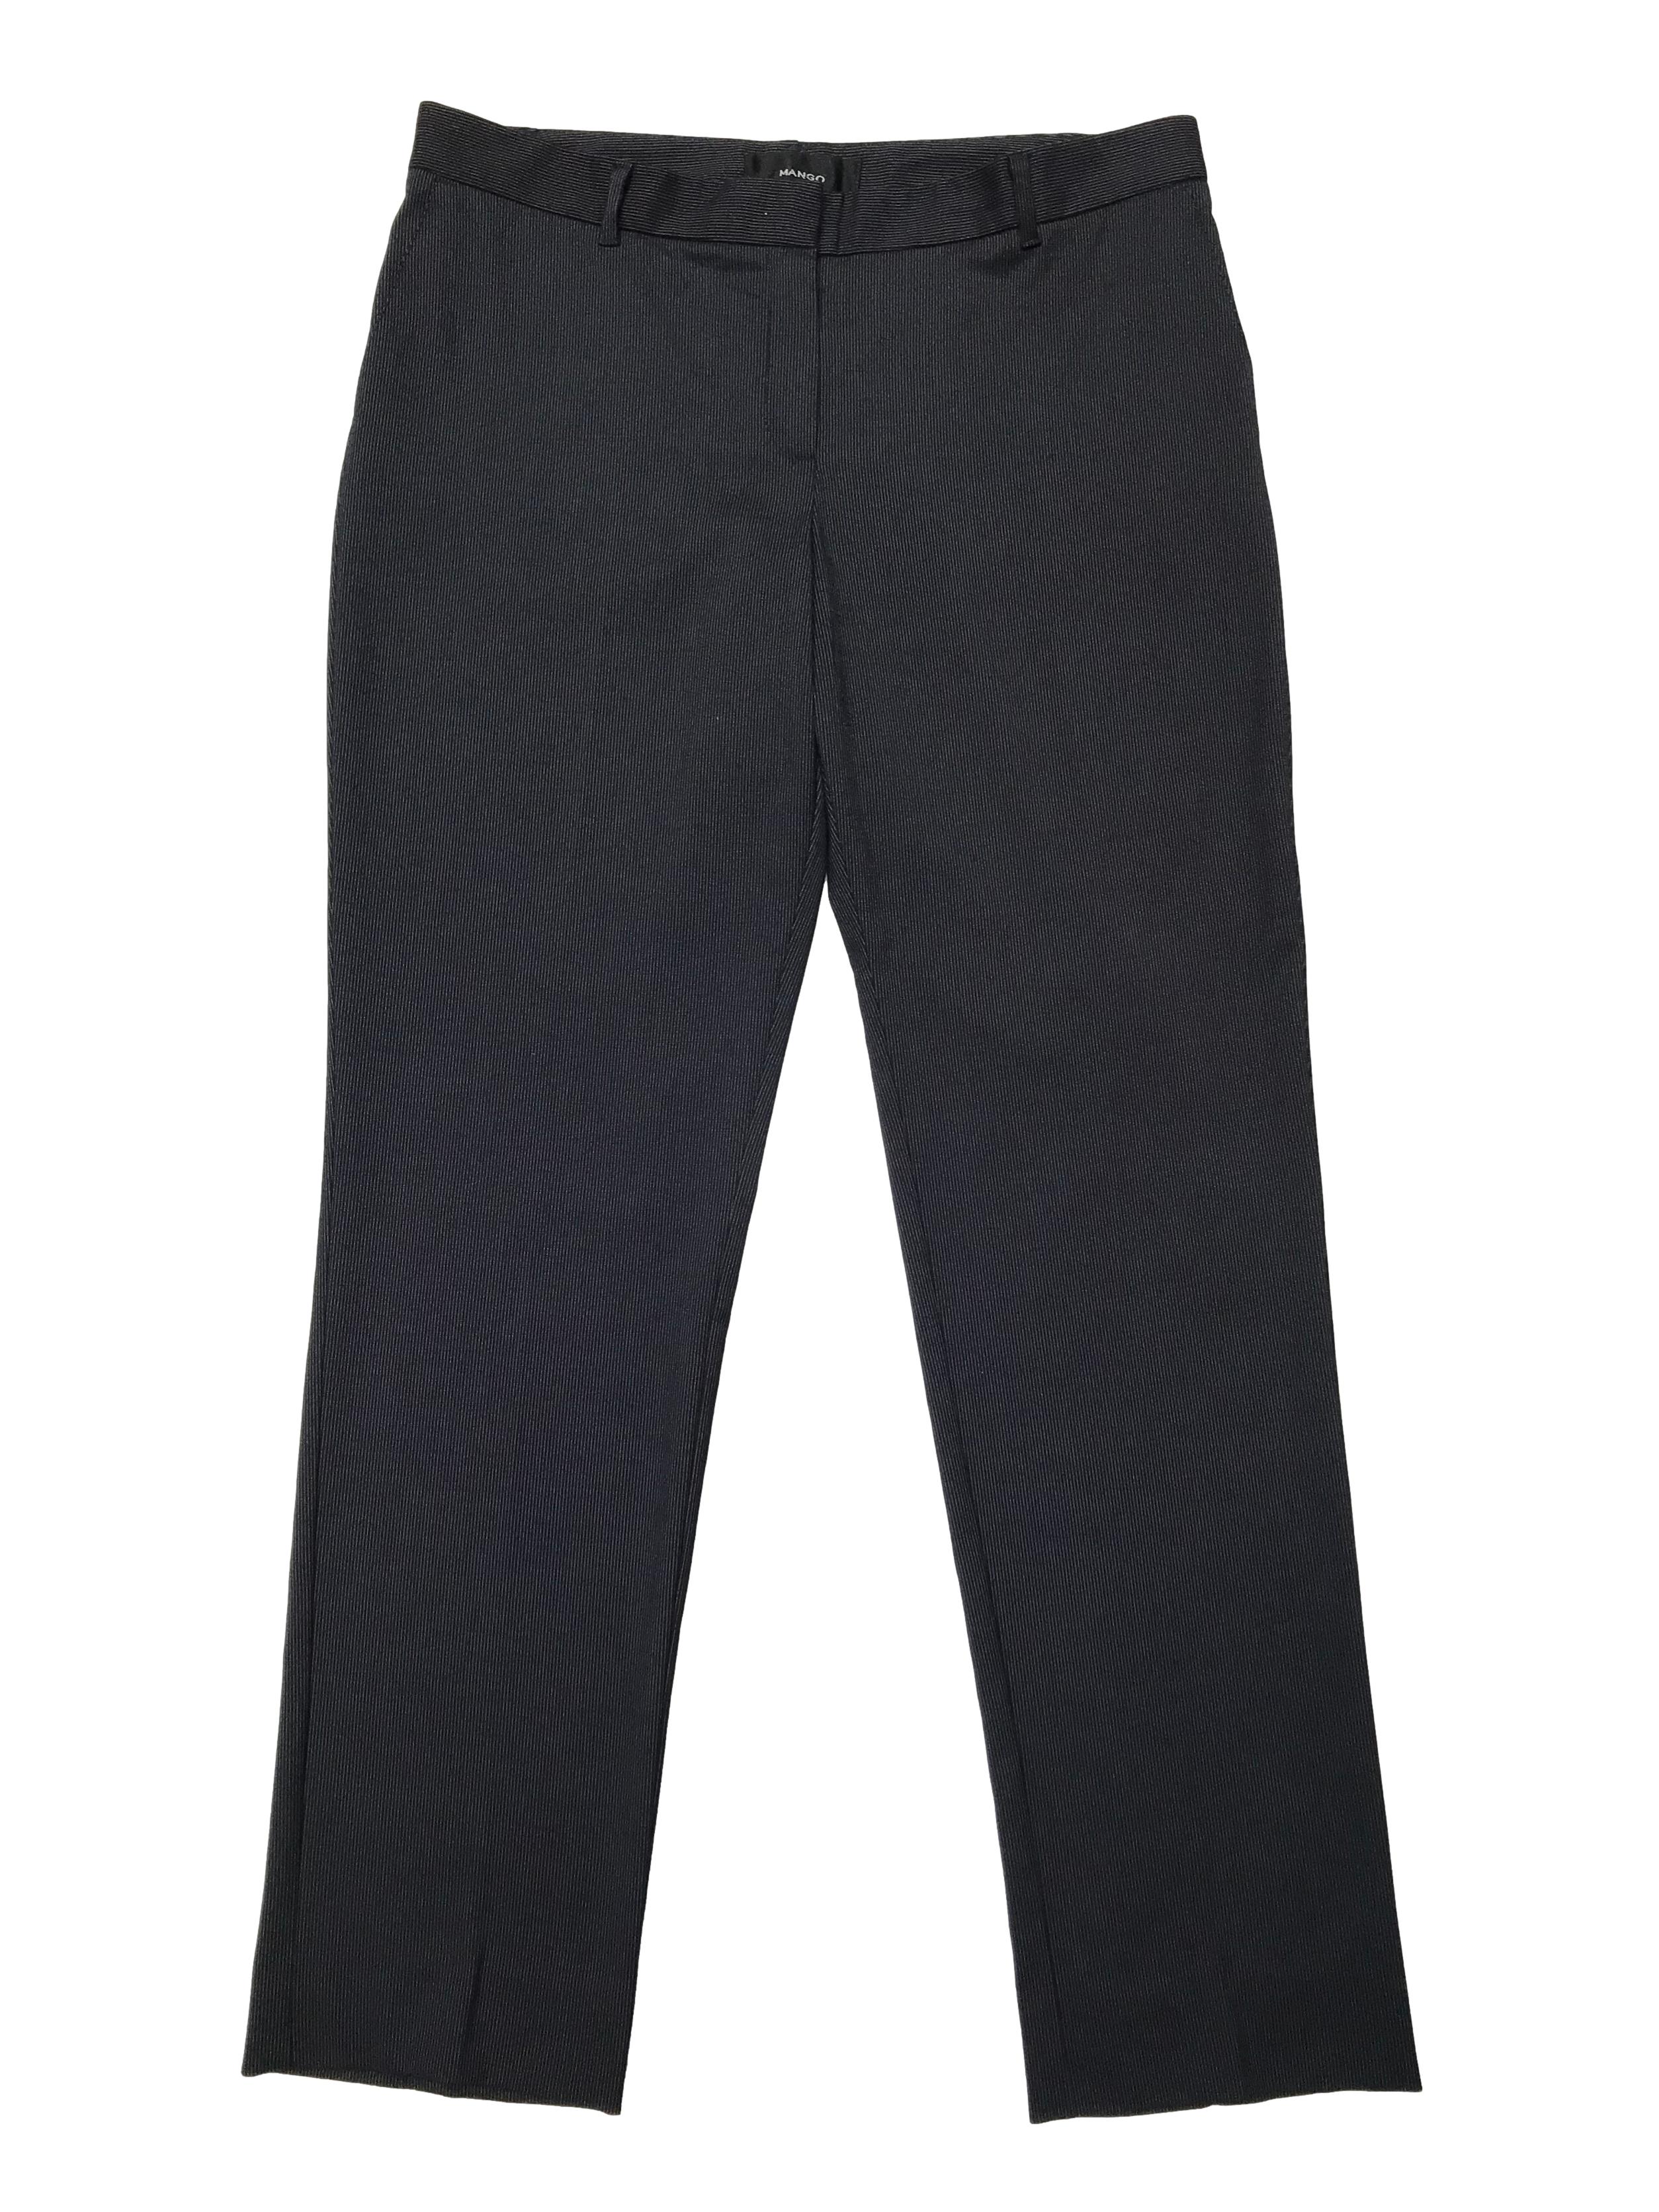 Pantalón Mango azul oscuro con líneas blancas, tiro medio, corte slim. Pretina 84cm Tiro 26cm Largo 100cm